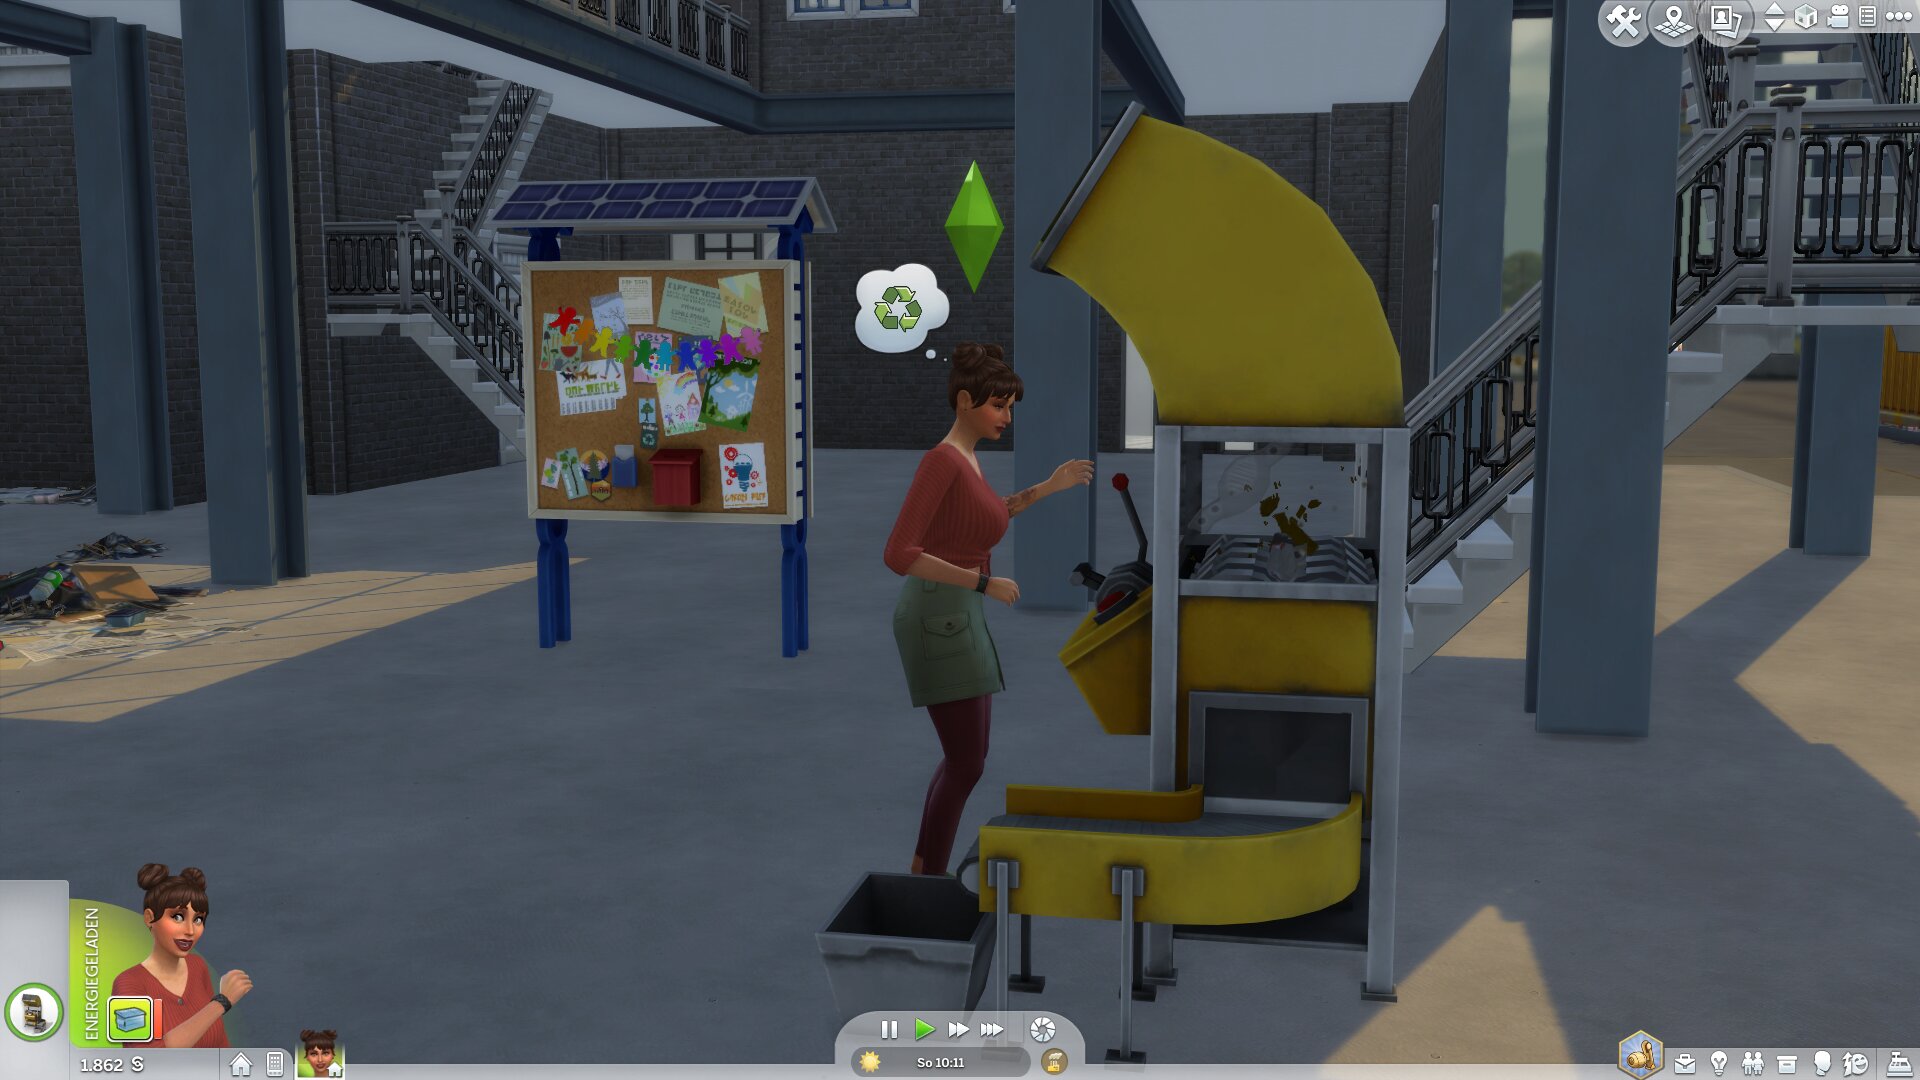 Die Sims 4: Nachhaltig leben